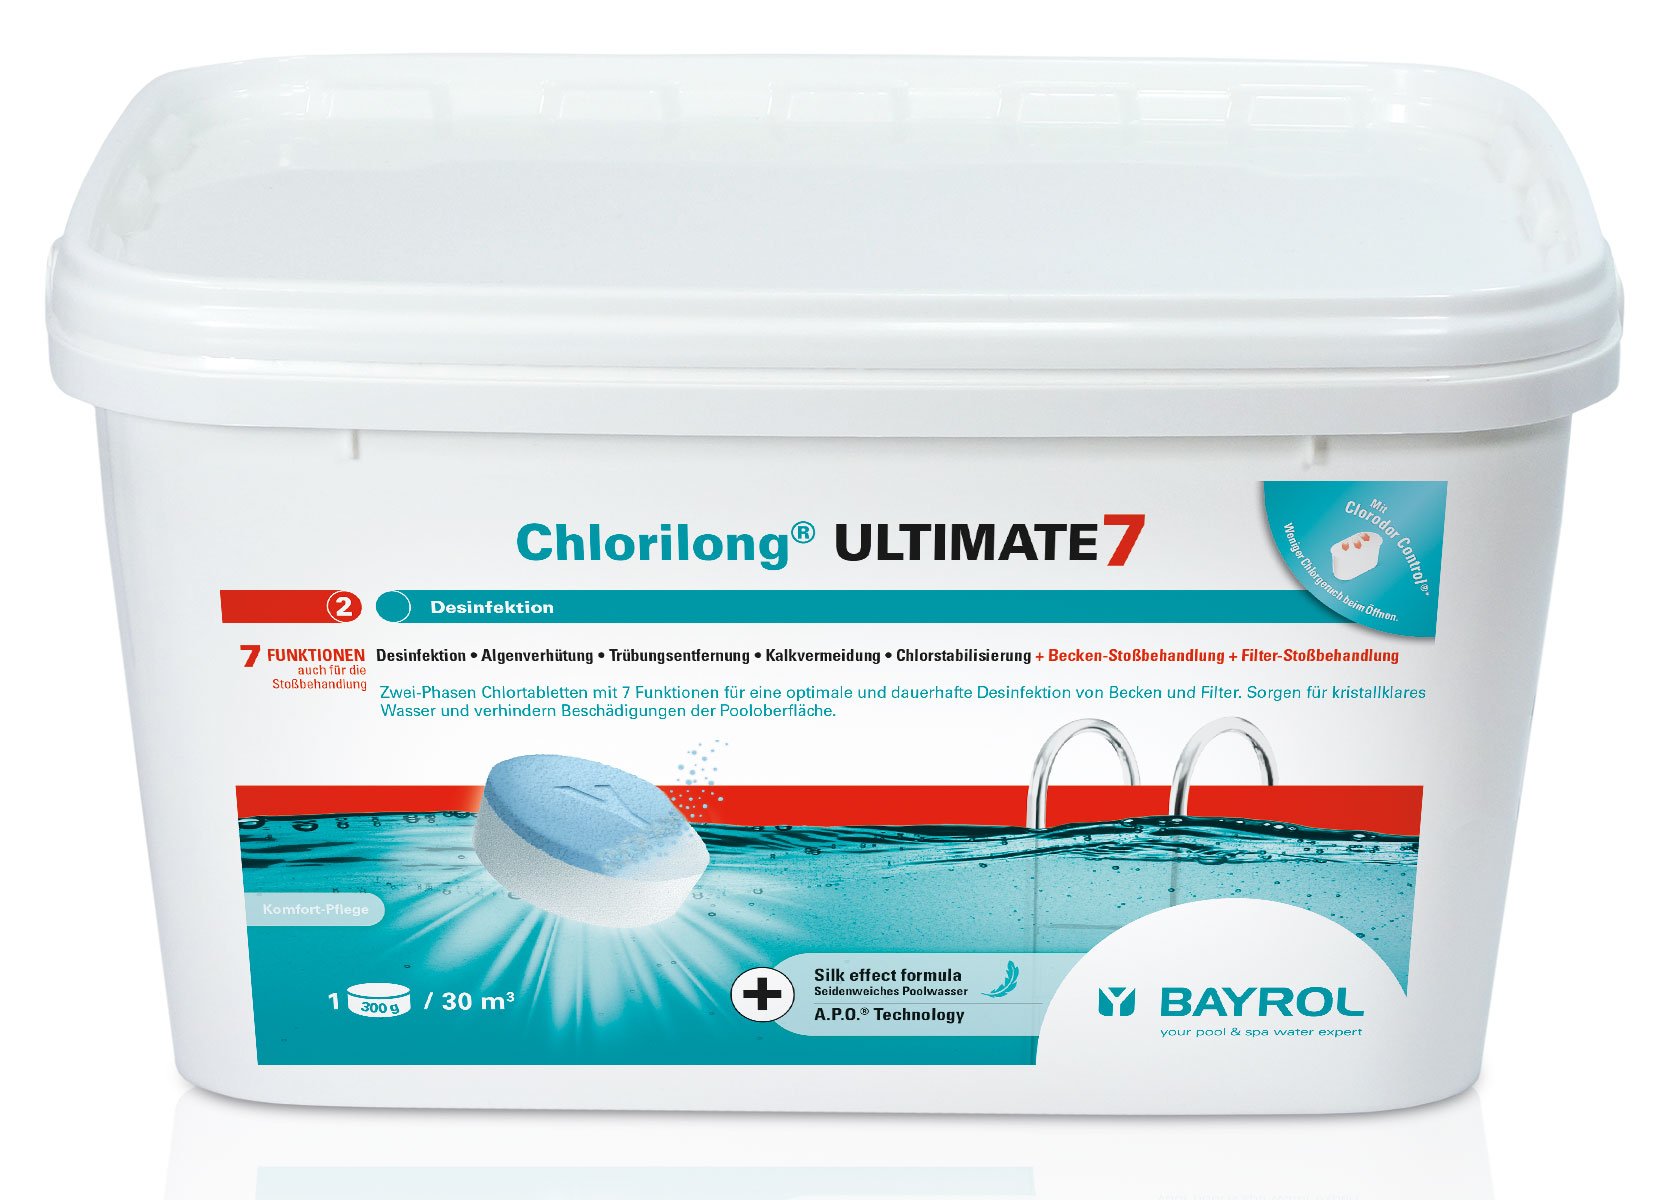 Chlortablette 300g mit 7 Funktionen, Chlorilong ULTIMATE 7, Multitab 4,8 kg BY-2299357